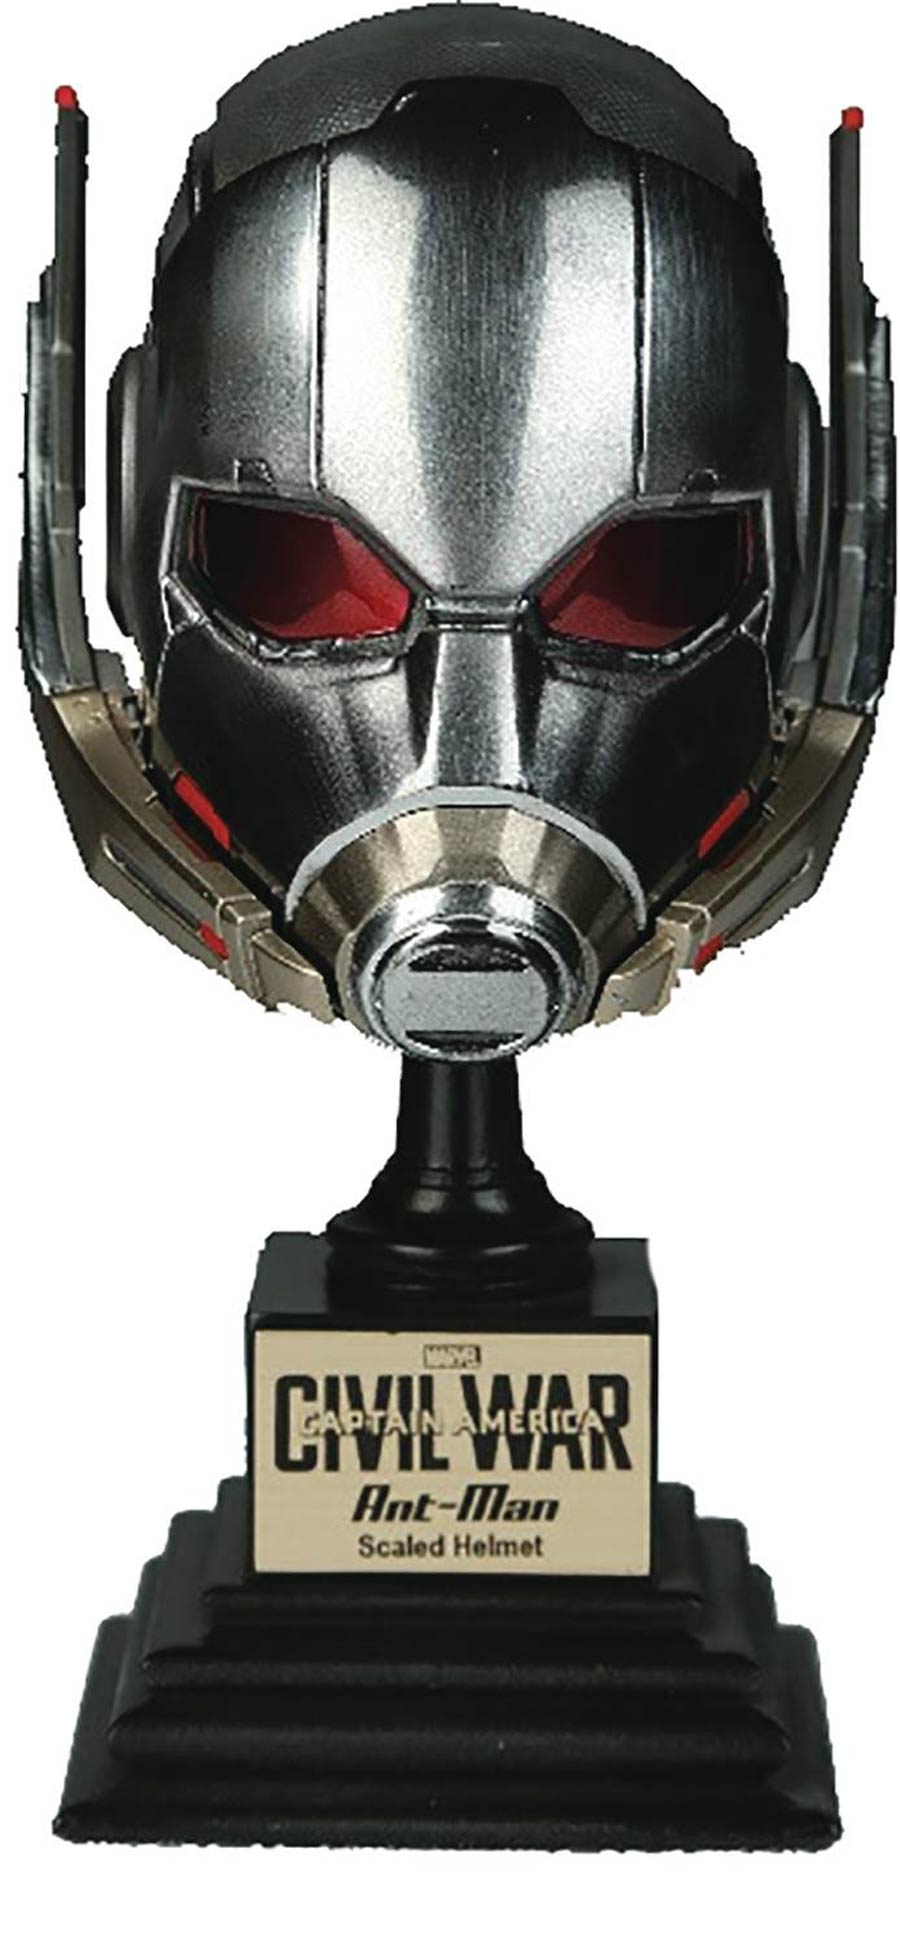 Captain America Civil War Replica Helmet - Ant-Man